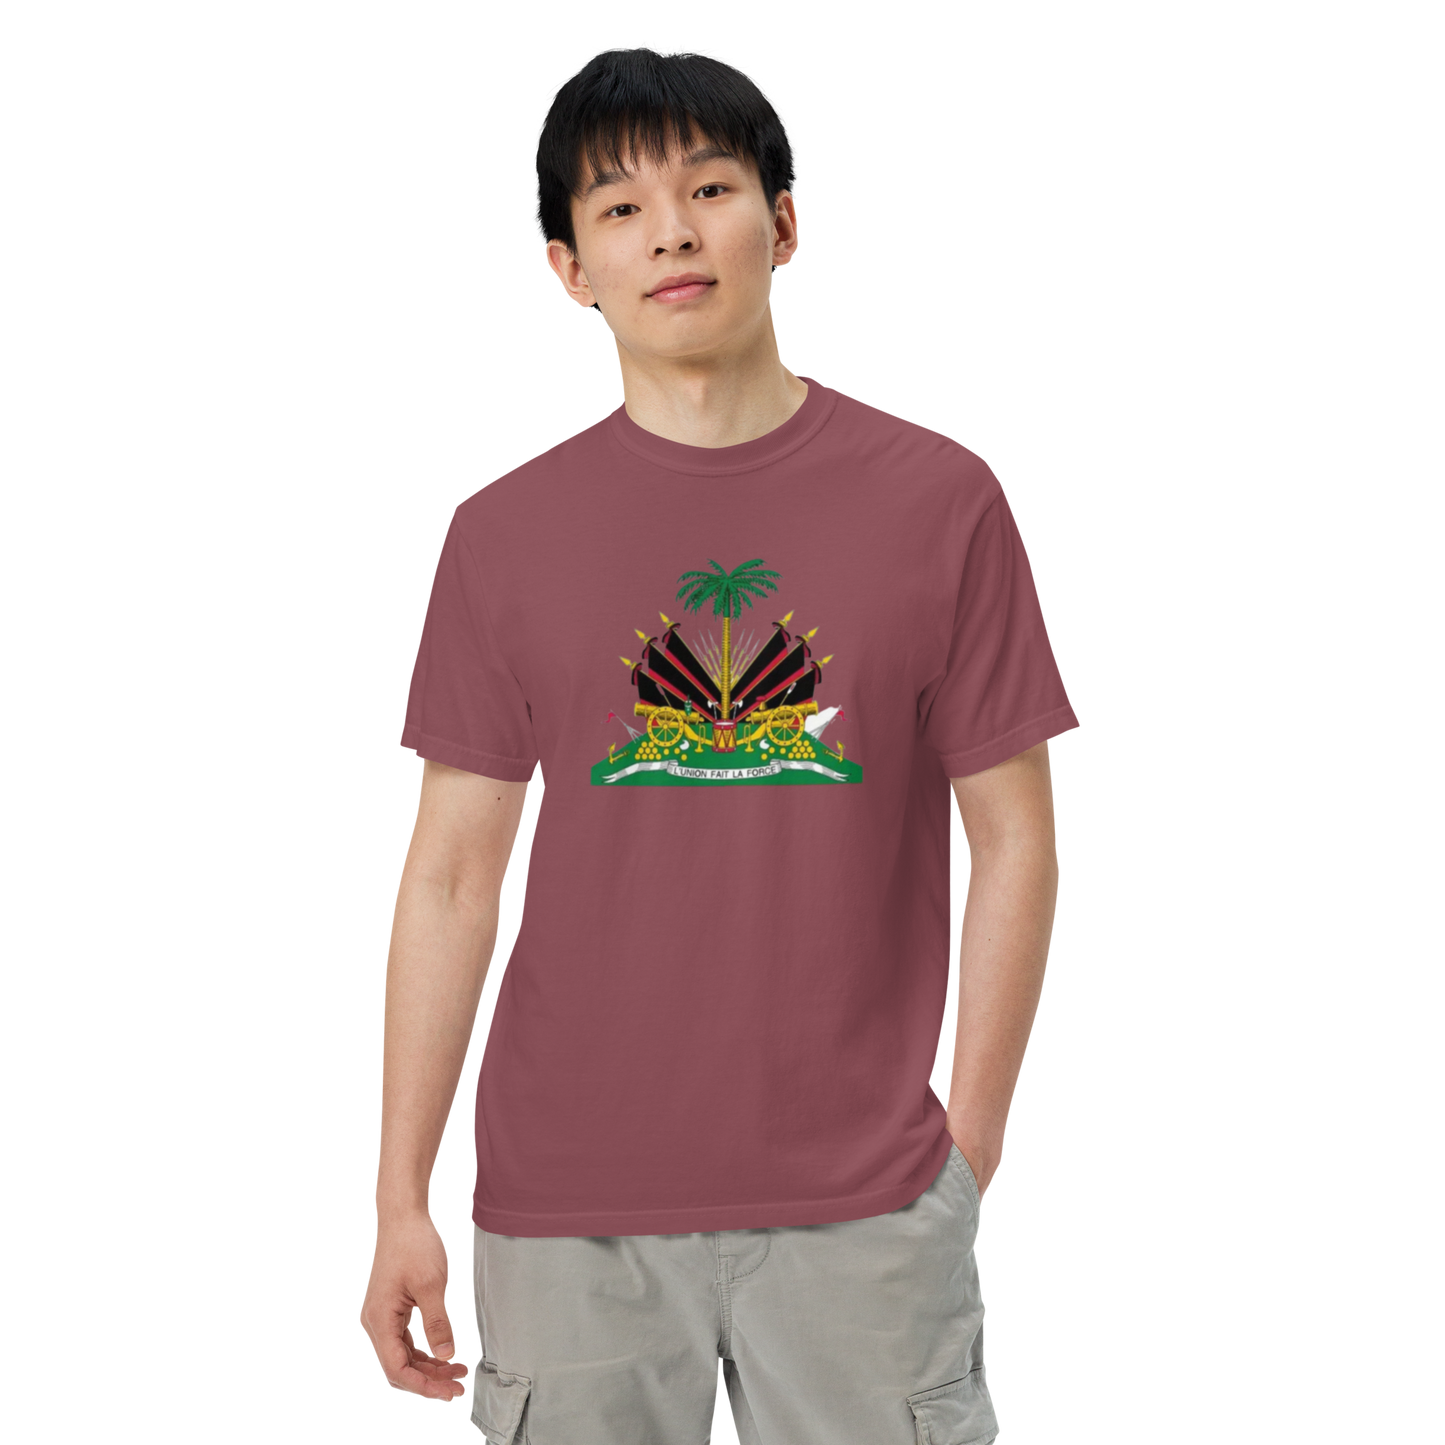 Men’s garment-dyed heavyweight t-shirt island rich